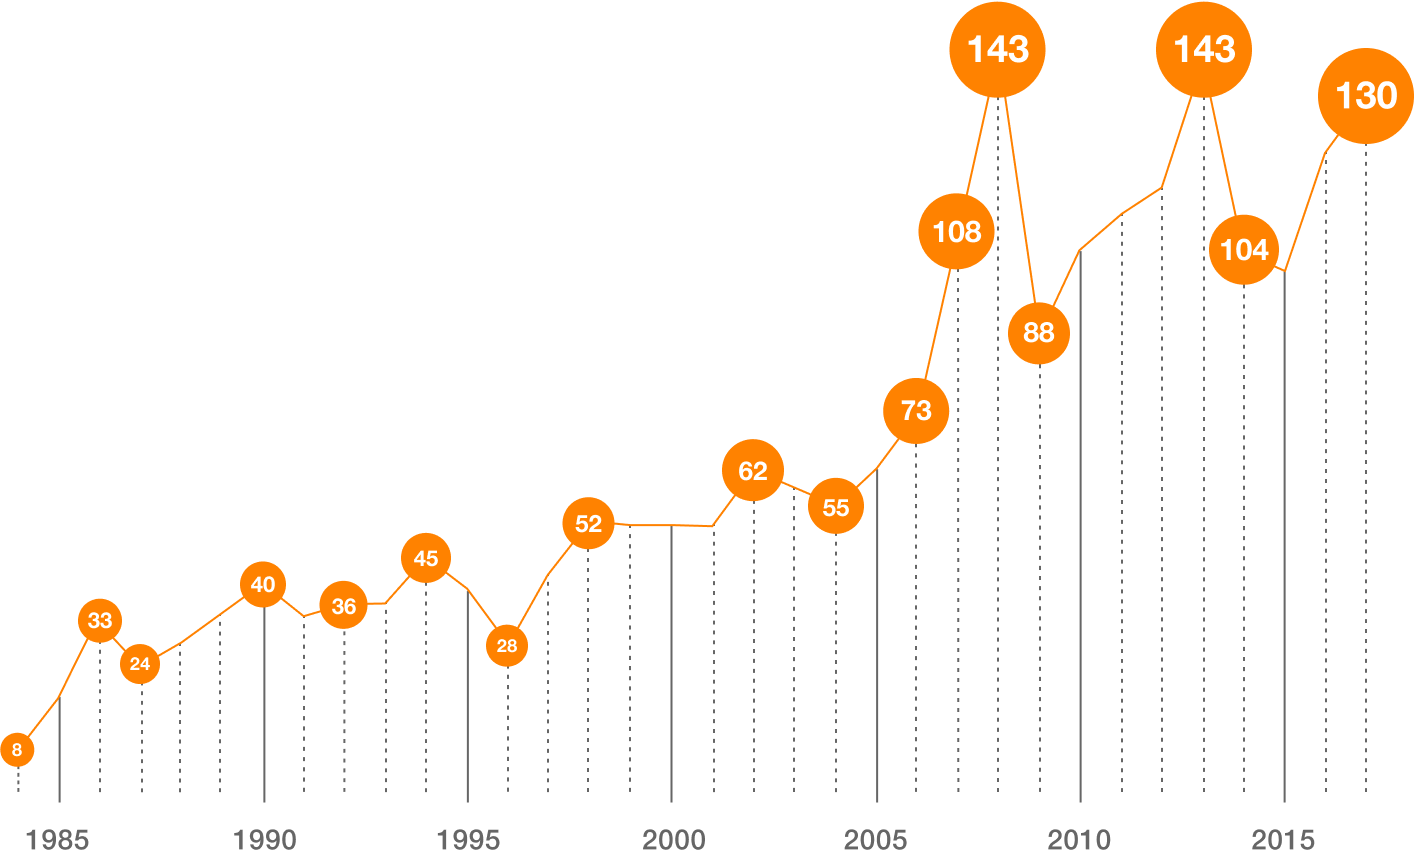 Il grafico mostra come sono aumentati i casi di decesso per una patologia da amianto dal 1984 a oggi.